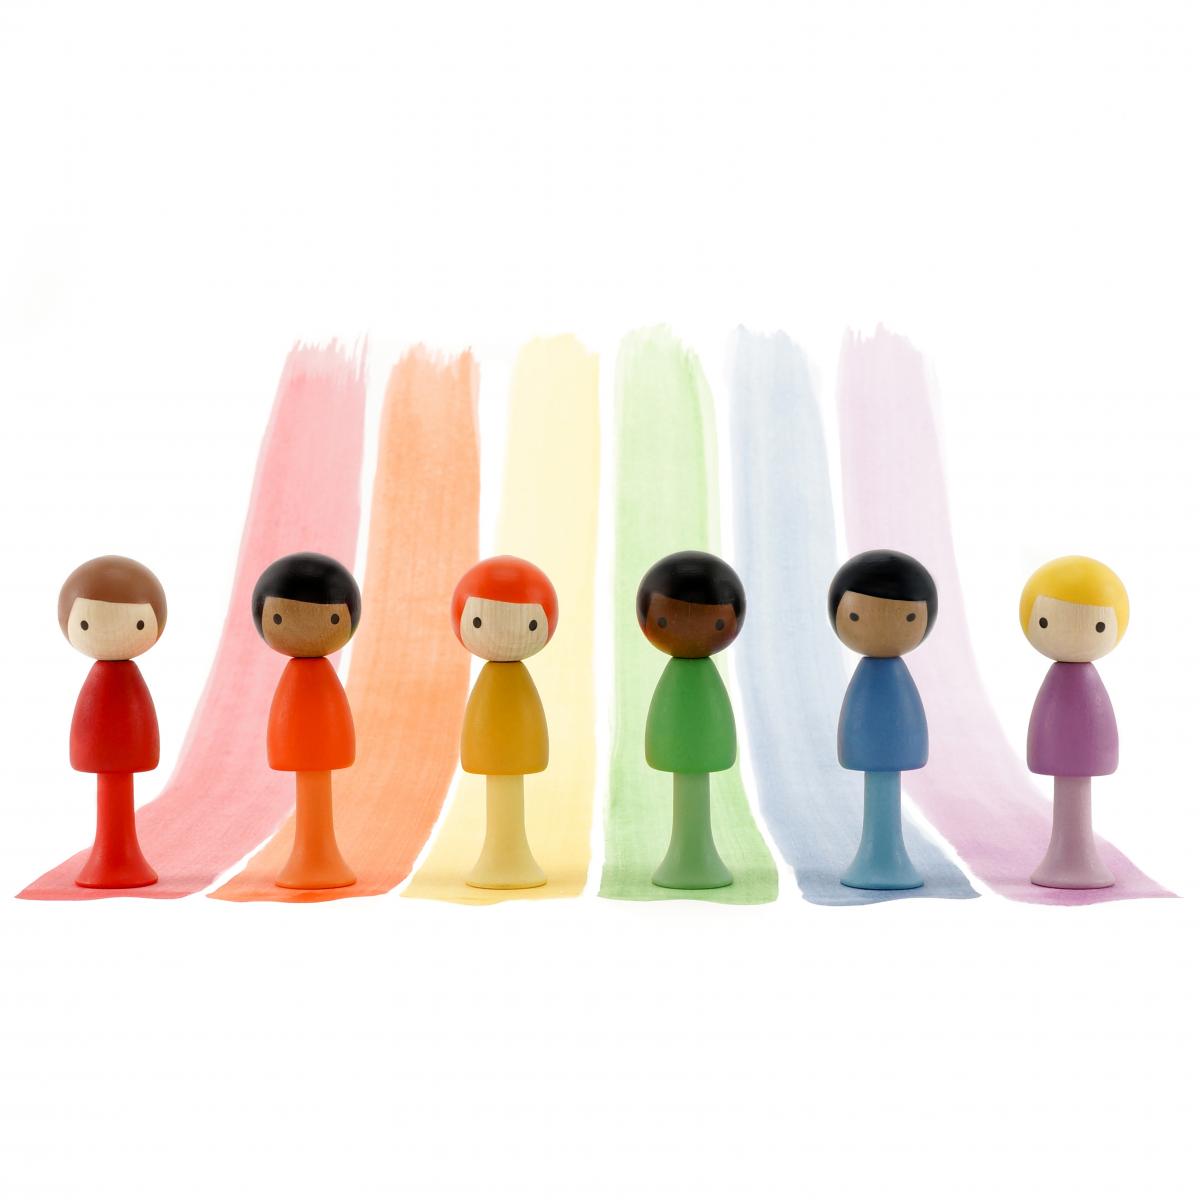 Kleurrijke poppetjes in teken van diversiteit